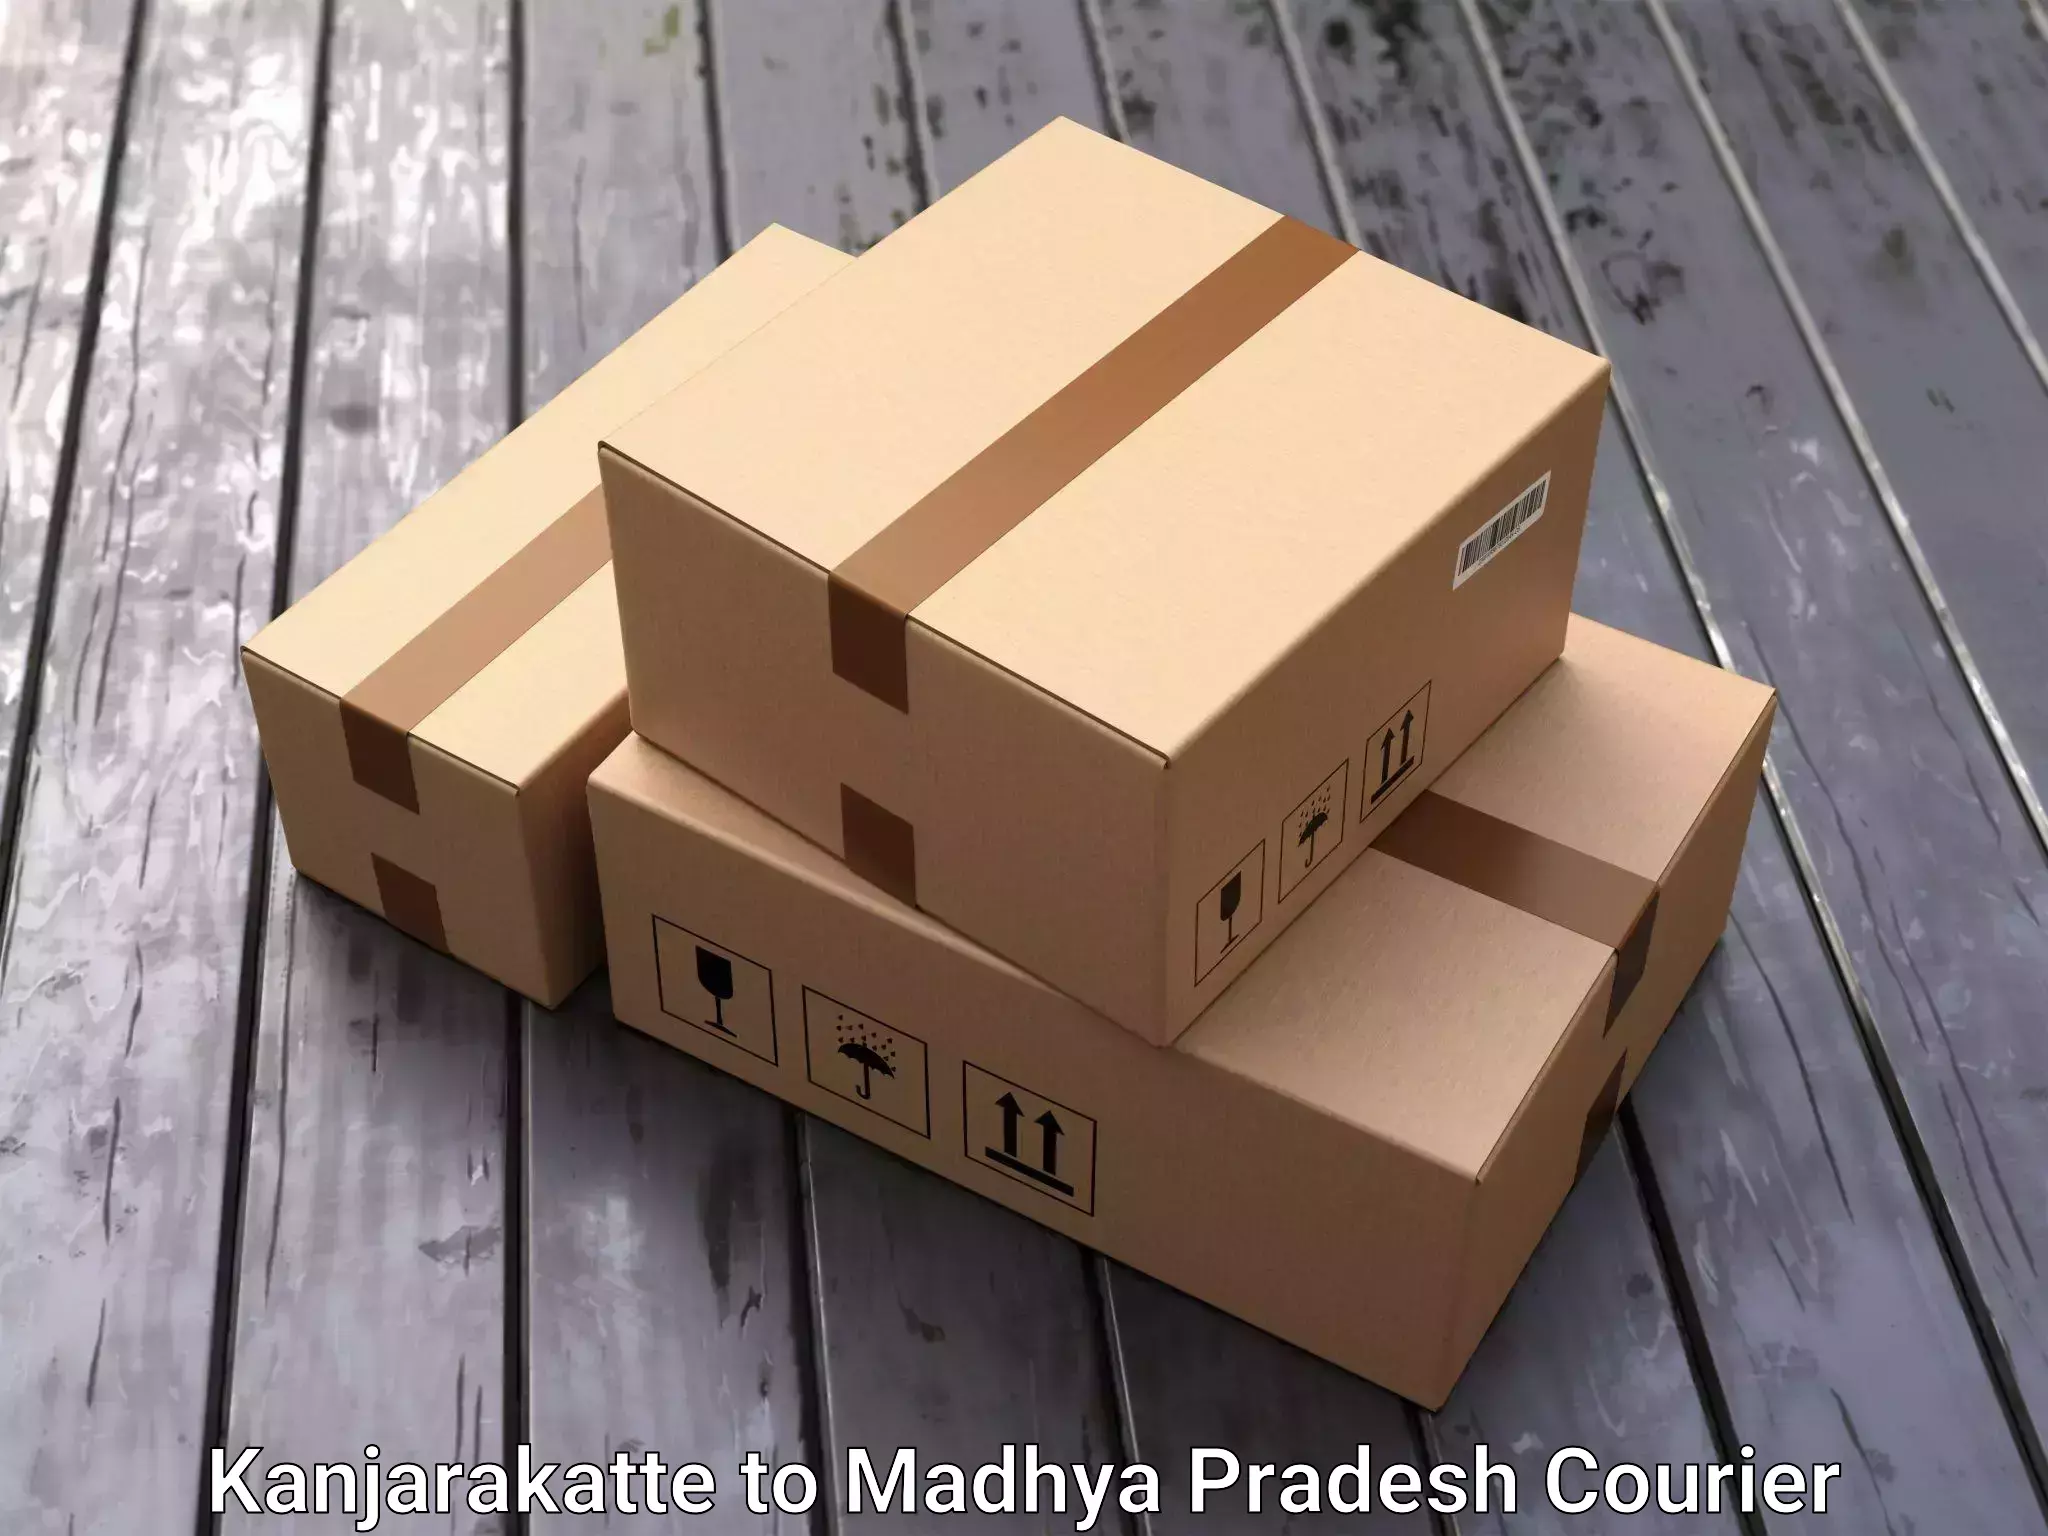 Efficient moving company Kanjarakatte to Niwari